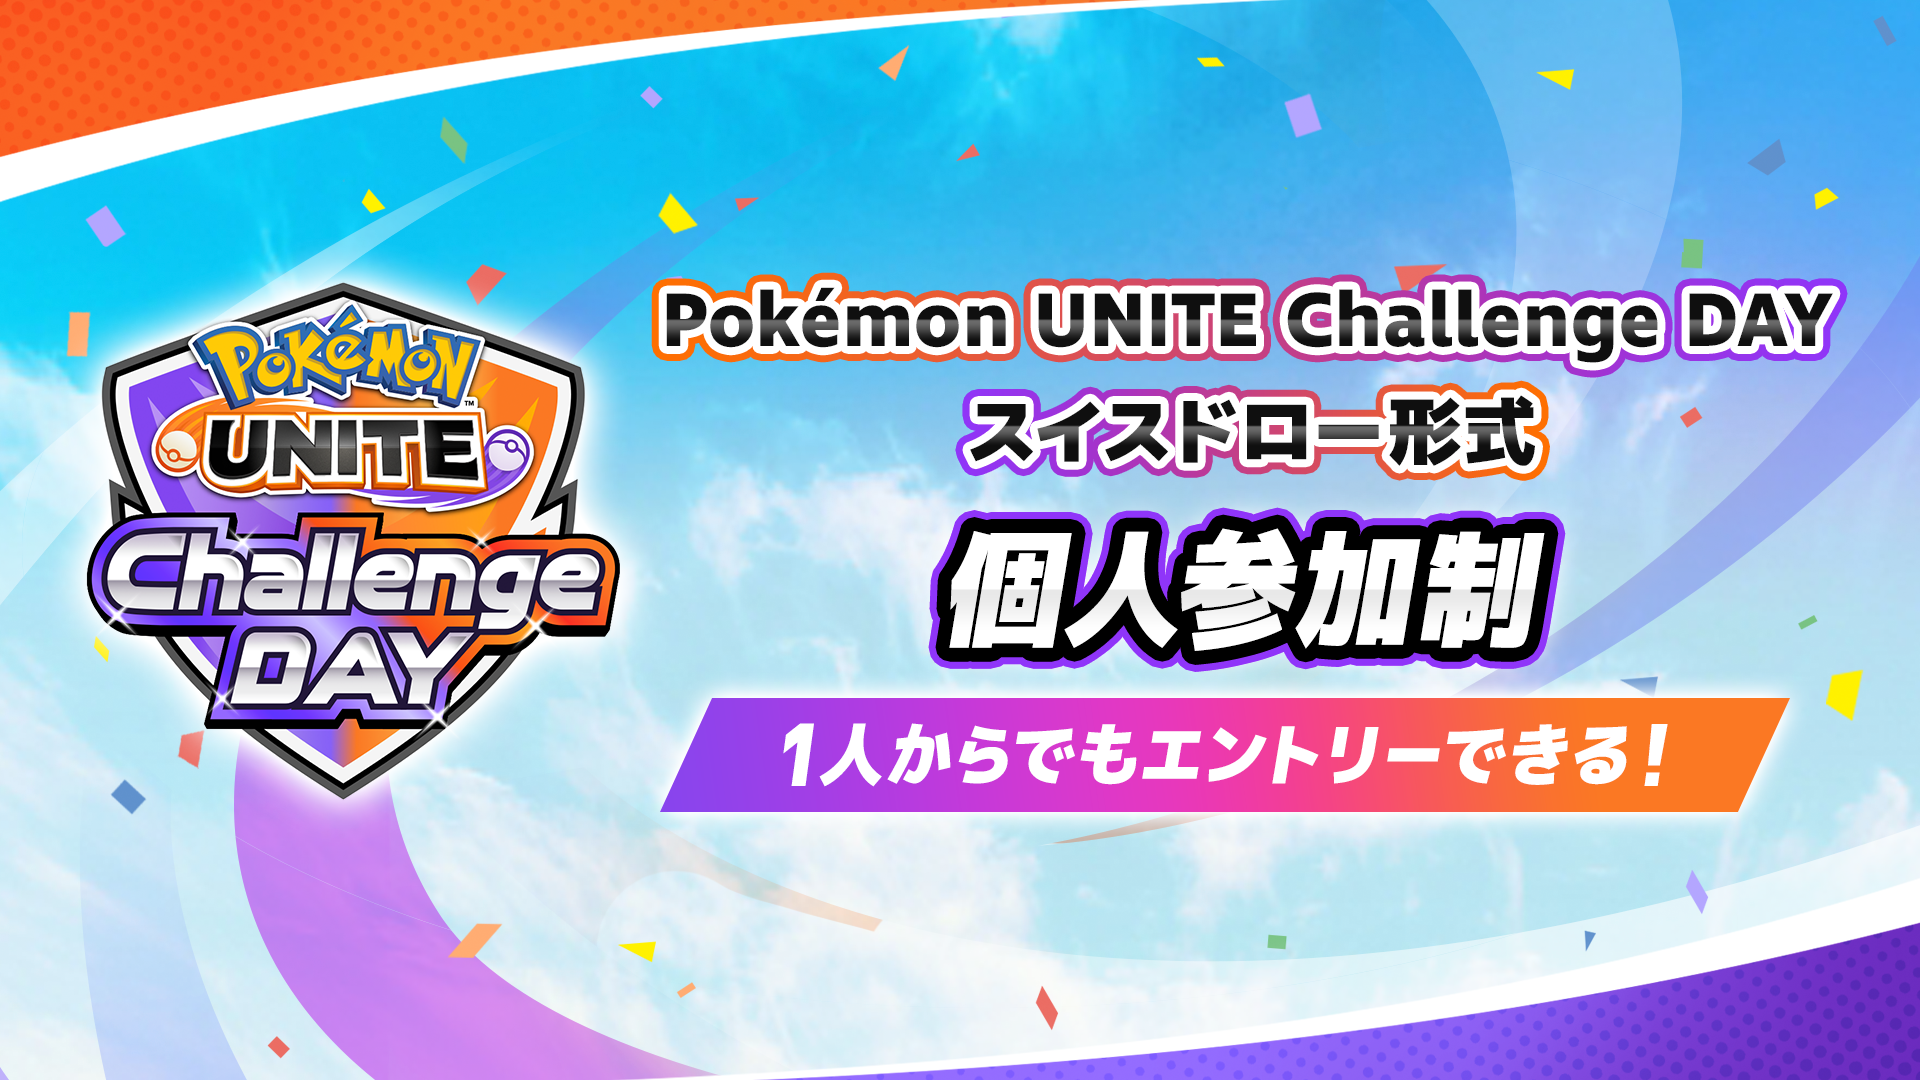 Pokemon UNITE Challenge DAY 10.07 個人参加制 スイスドロー形式 午前の部・午後の部 計3イベント開催！